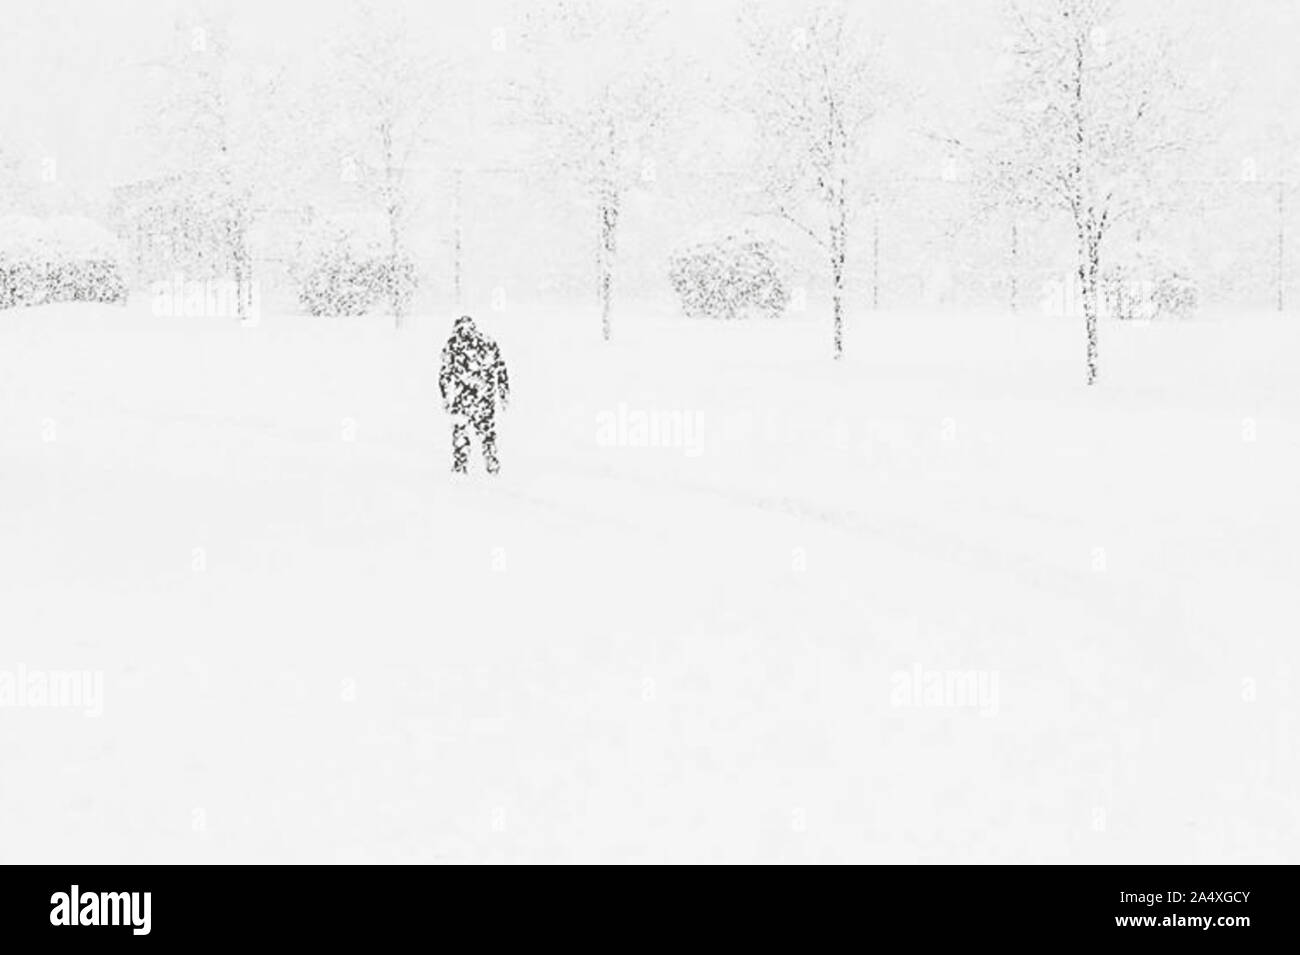 Ein Mann Ventures in ein blendendes Blizzard auf einem Schnee Tag von der Arbeit nach Hause. Stockfoto